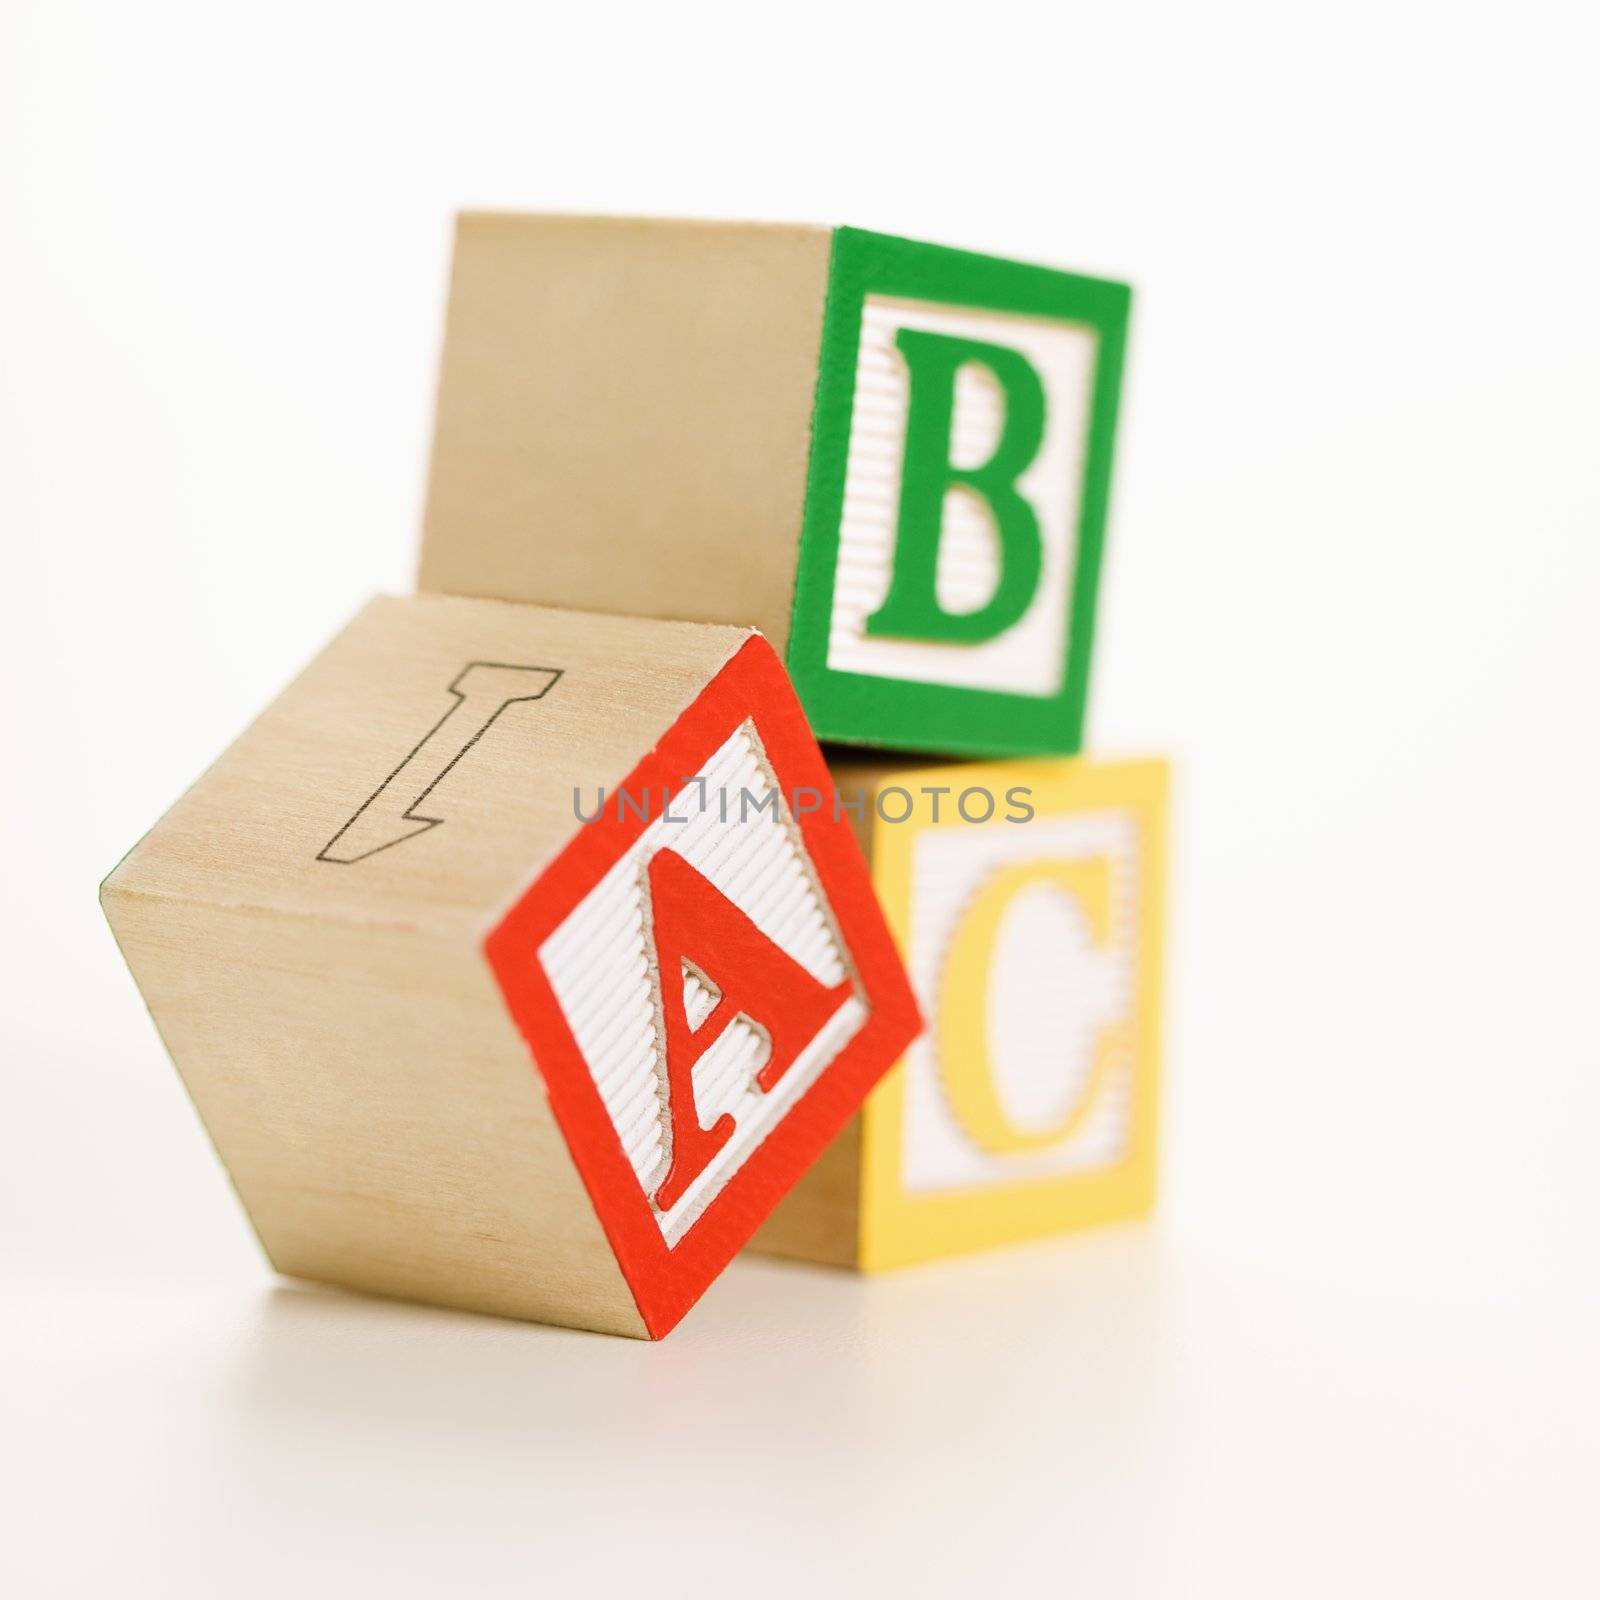 Toy blocks. by iofoto